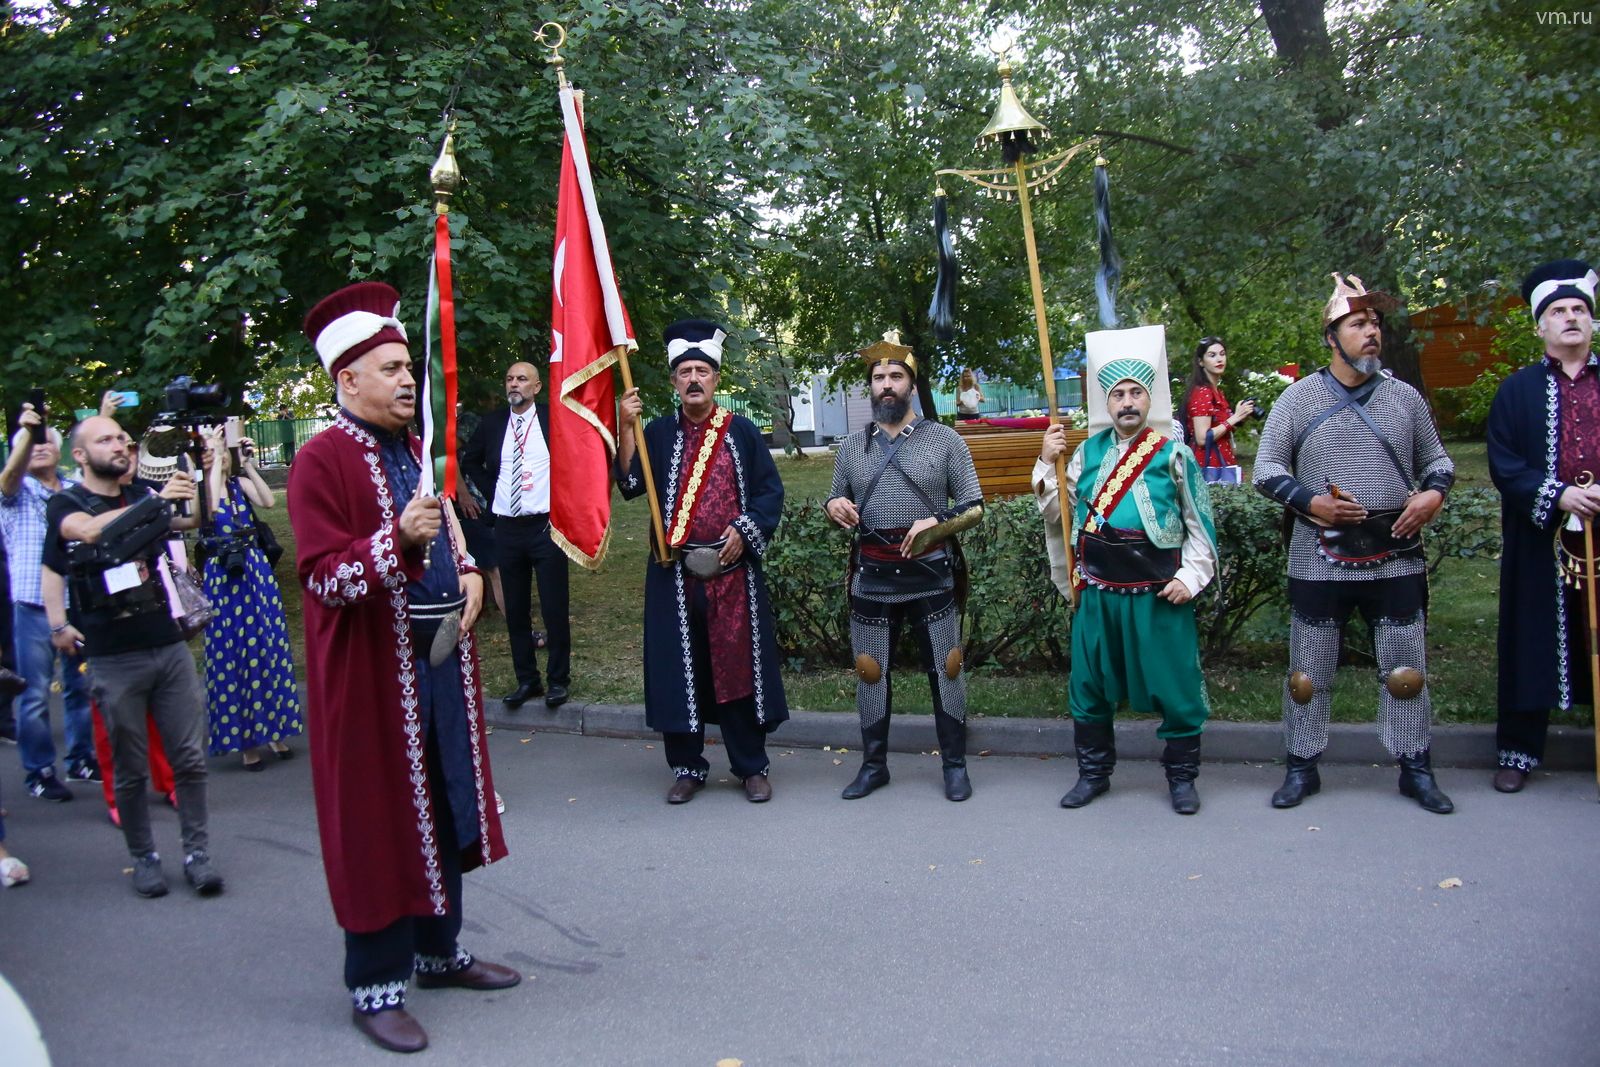 Фестиваль Турции в парке «Красная Пресня» посетили свыше 160 тысяч горожан. Фото: Сергей Шахиджанян, «Вечерняя Москва»